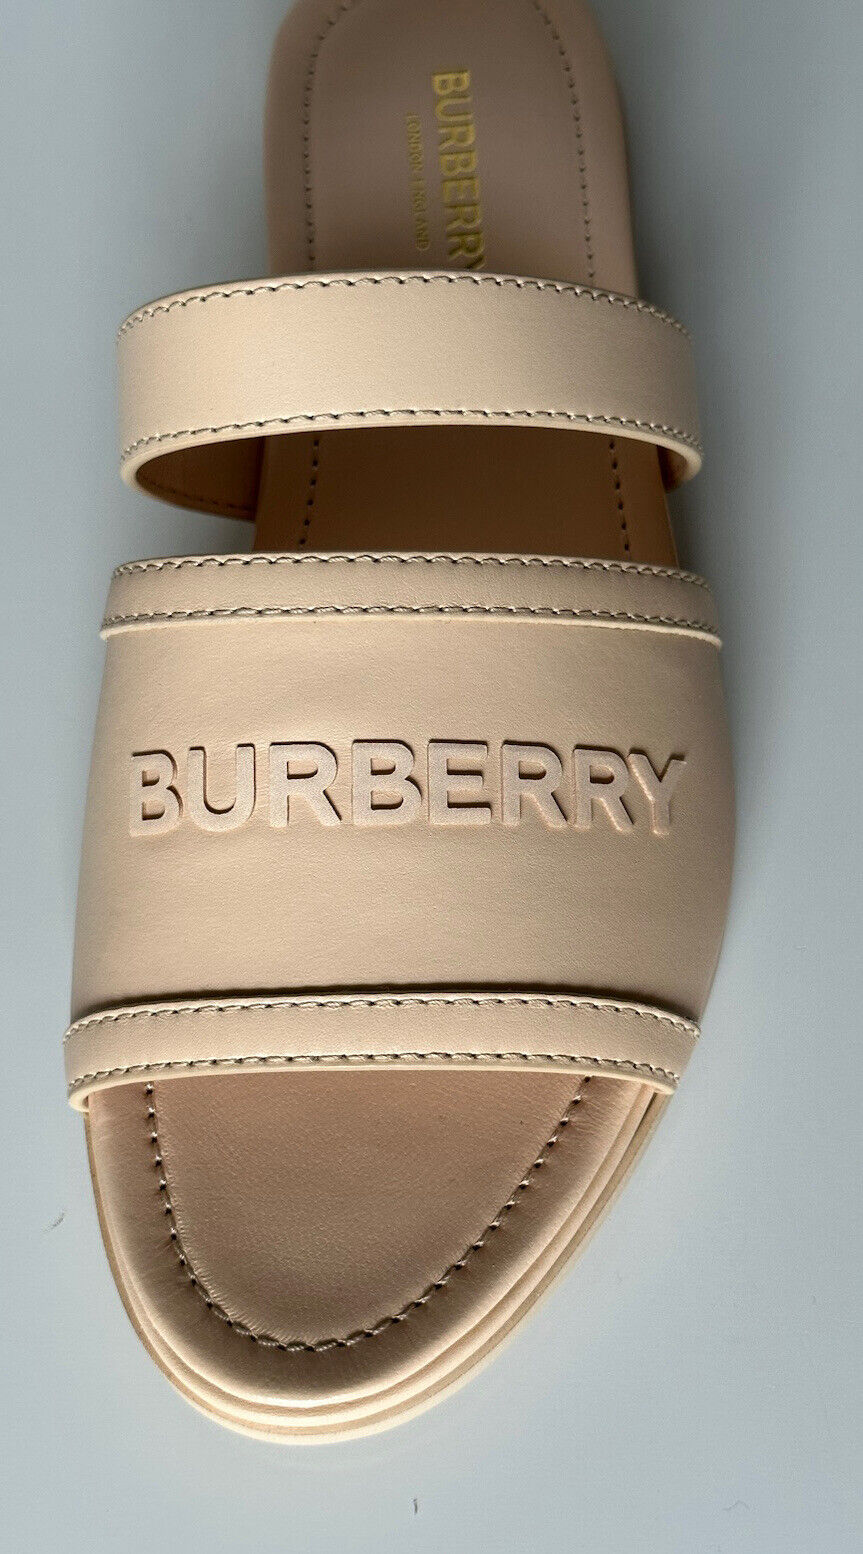 NIB Burberry Женские кожаные шлепанцы с открытым носком персикового цвета 7,5 (37,5) 8047843 IT 